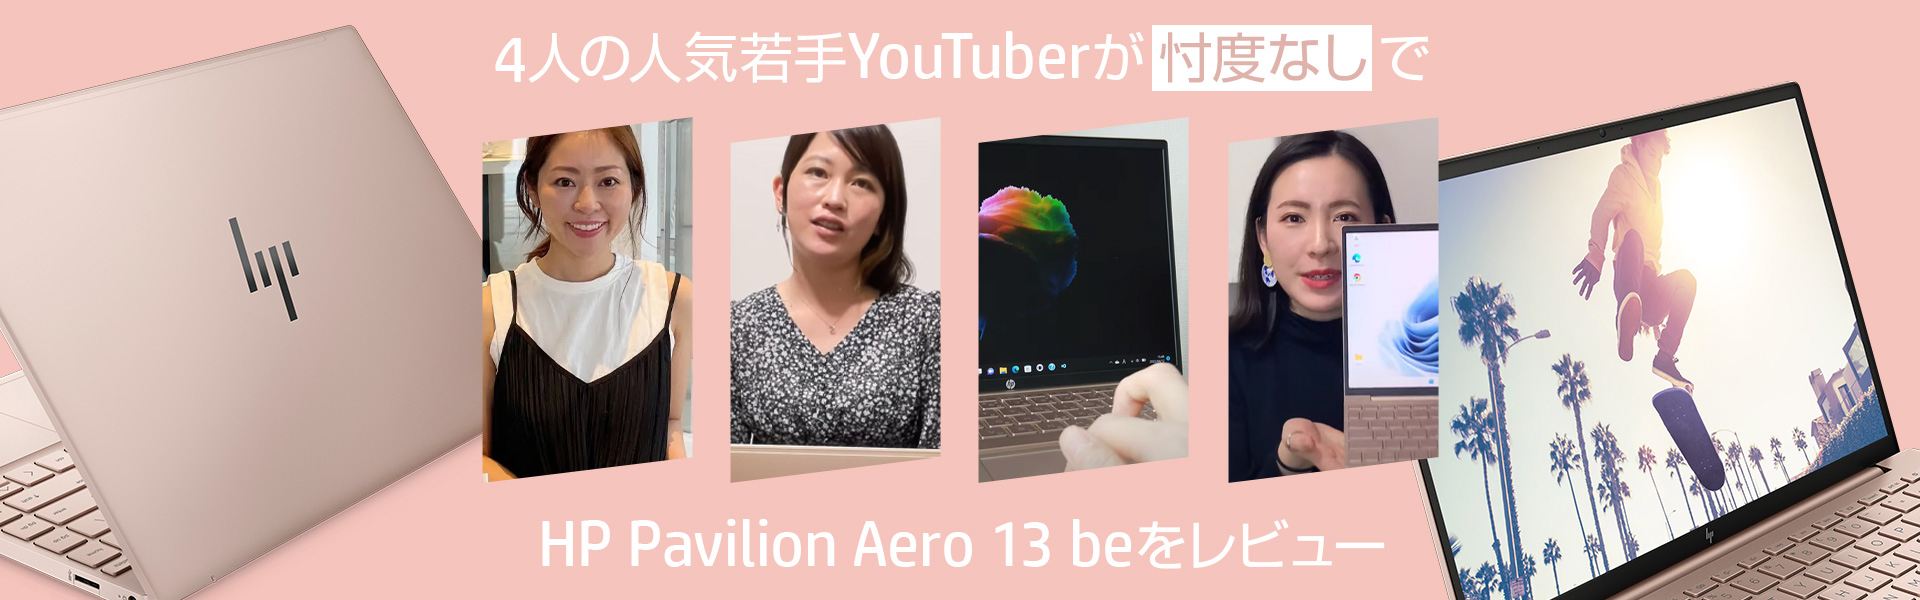 4人の人気若手YouTuberが忖度なしで HP Pavilion Aero 13 beをレビュー